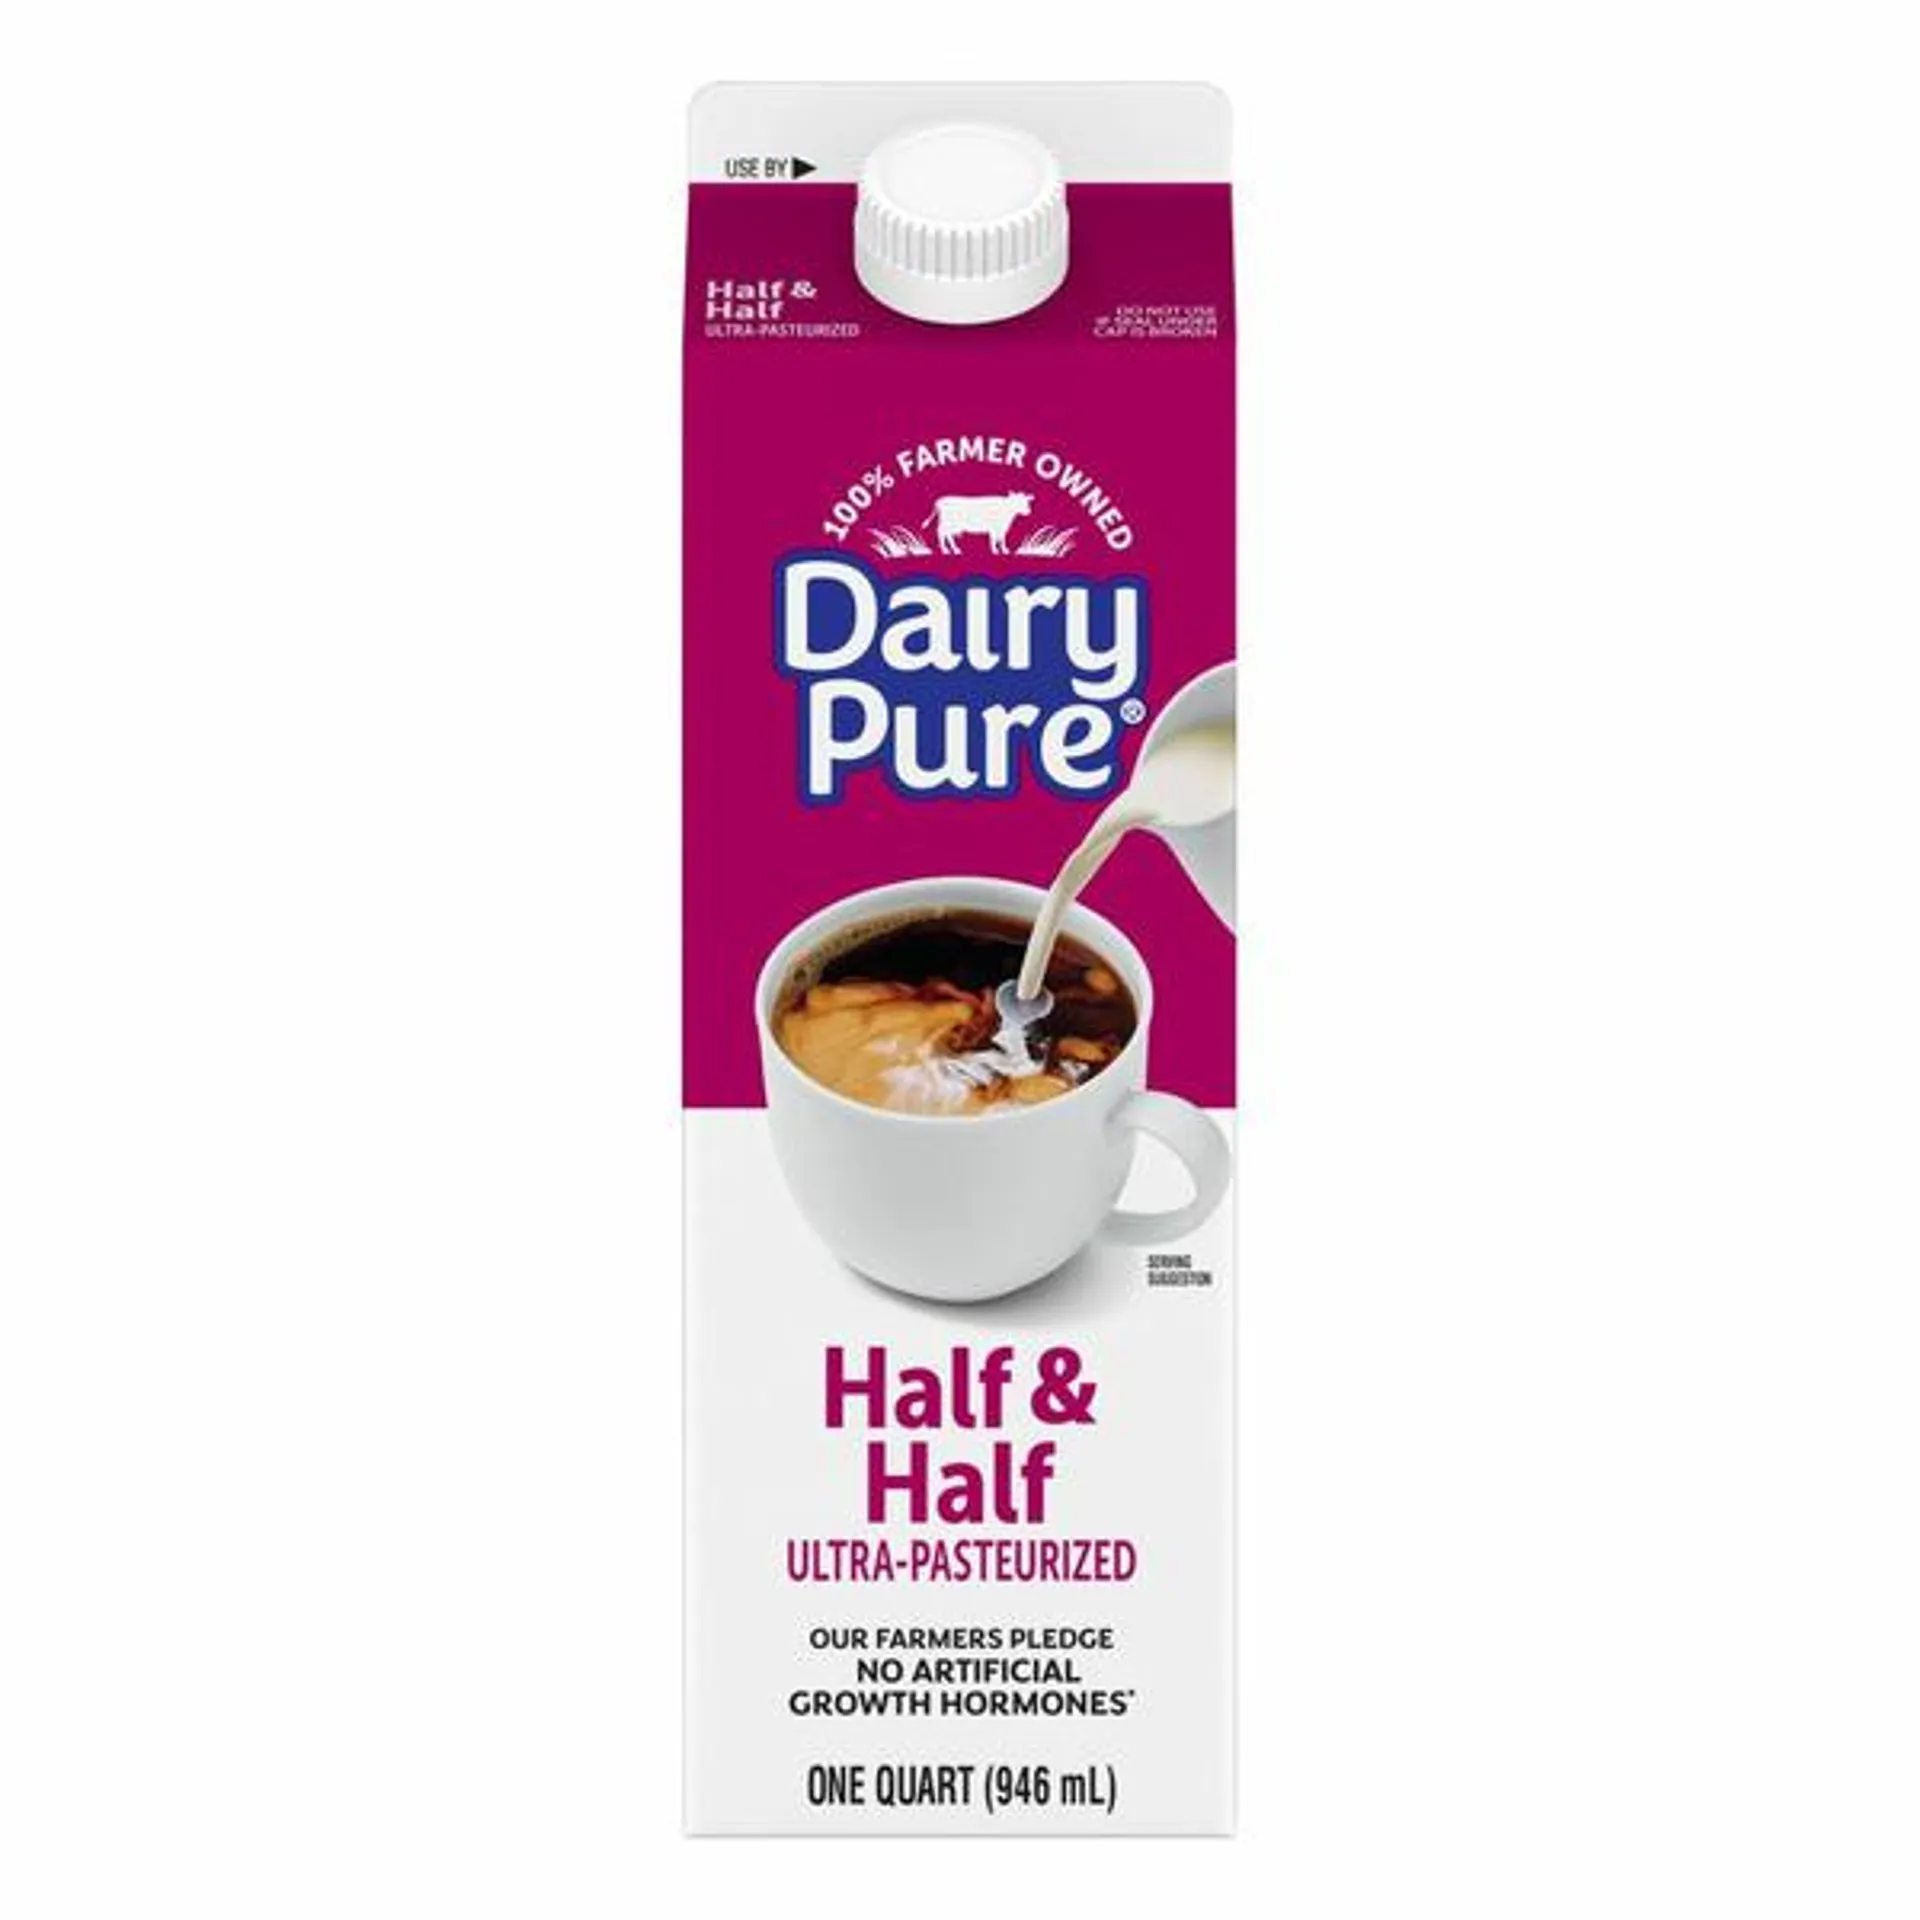 DairyPure Robinson Dairy Half & Half